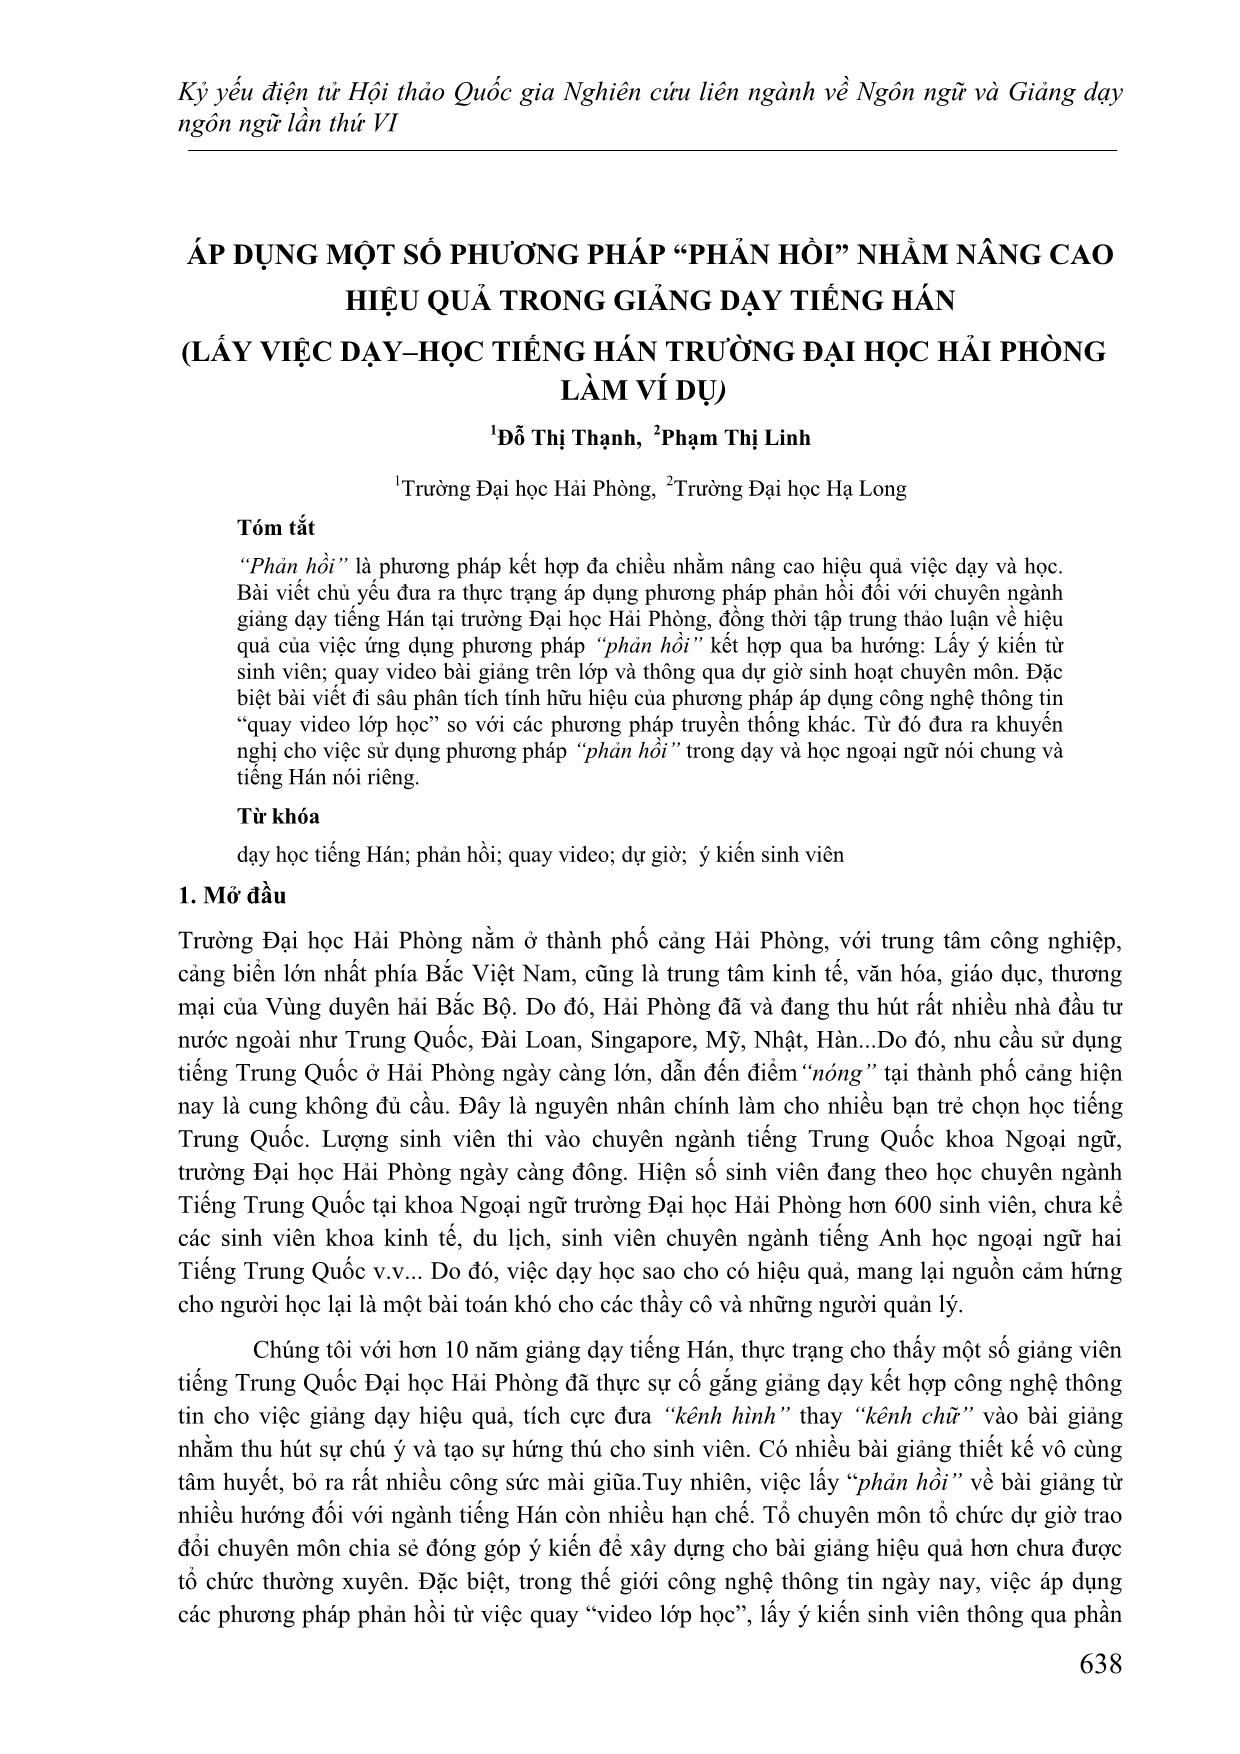 Áp dụng một số phương pháp “Phản hồi” nhằm nâng cao hiệu quả trong giảng dạy tiếng Hán (Lấy việc dạy học tiếng Hán trường Đại học Hải Phòng làm ví dụ) trang 1